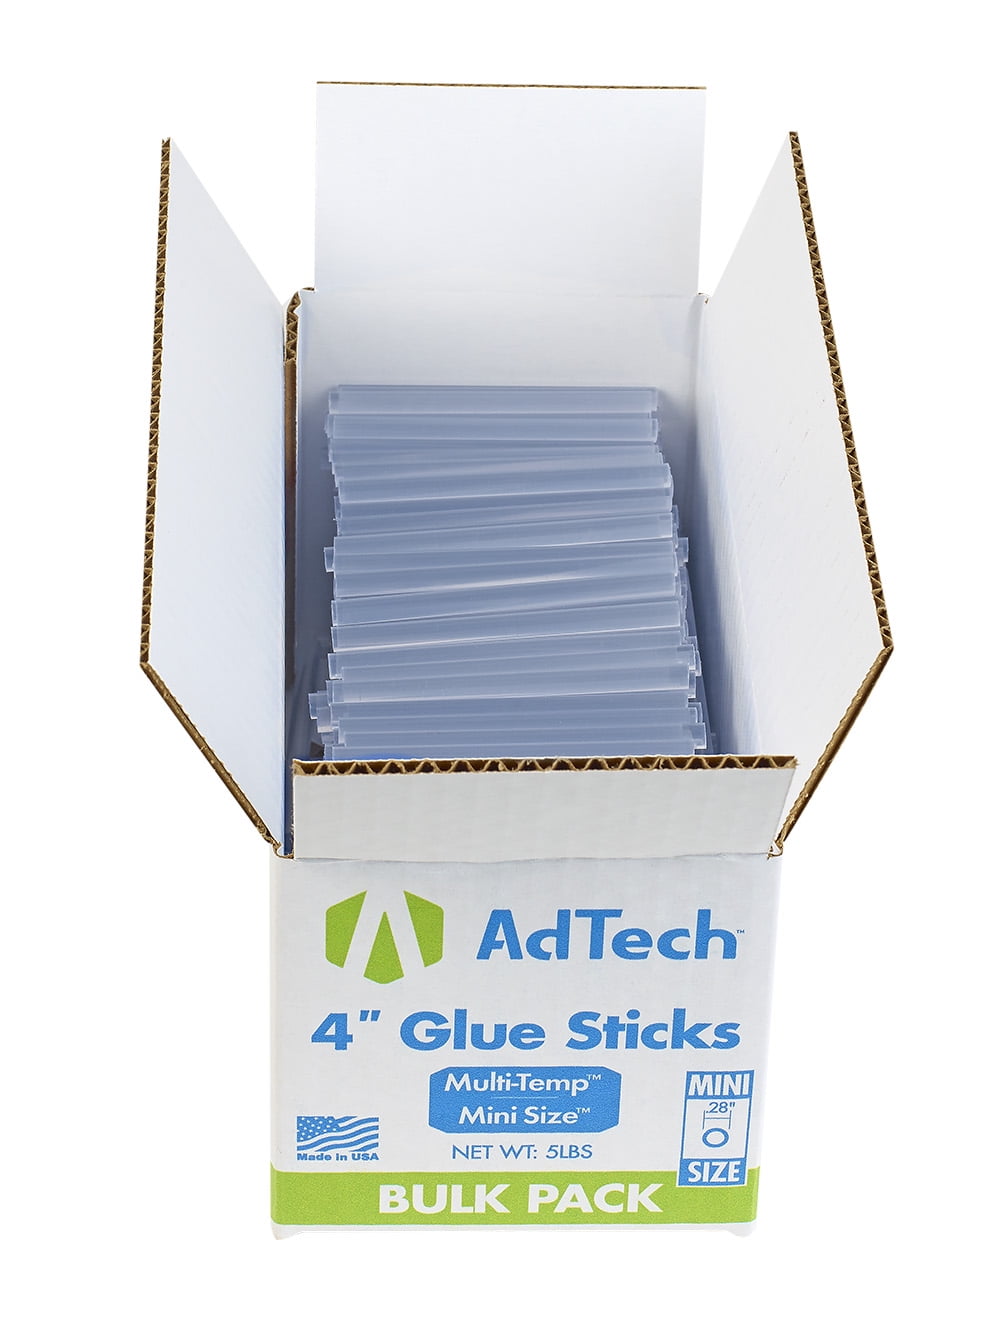 Adtech Multi-Temp Mini-Size Glue Sticks 4 in. 5 lb.